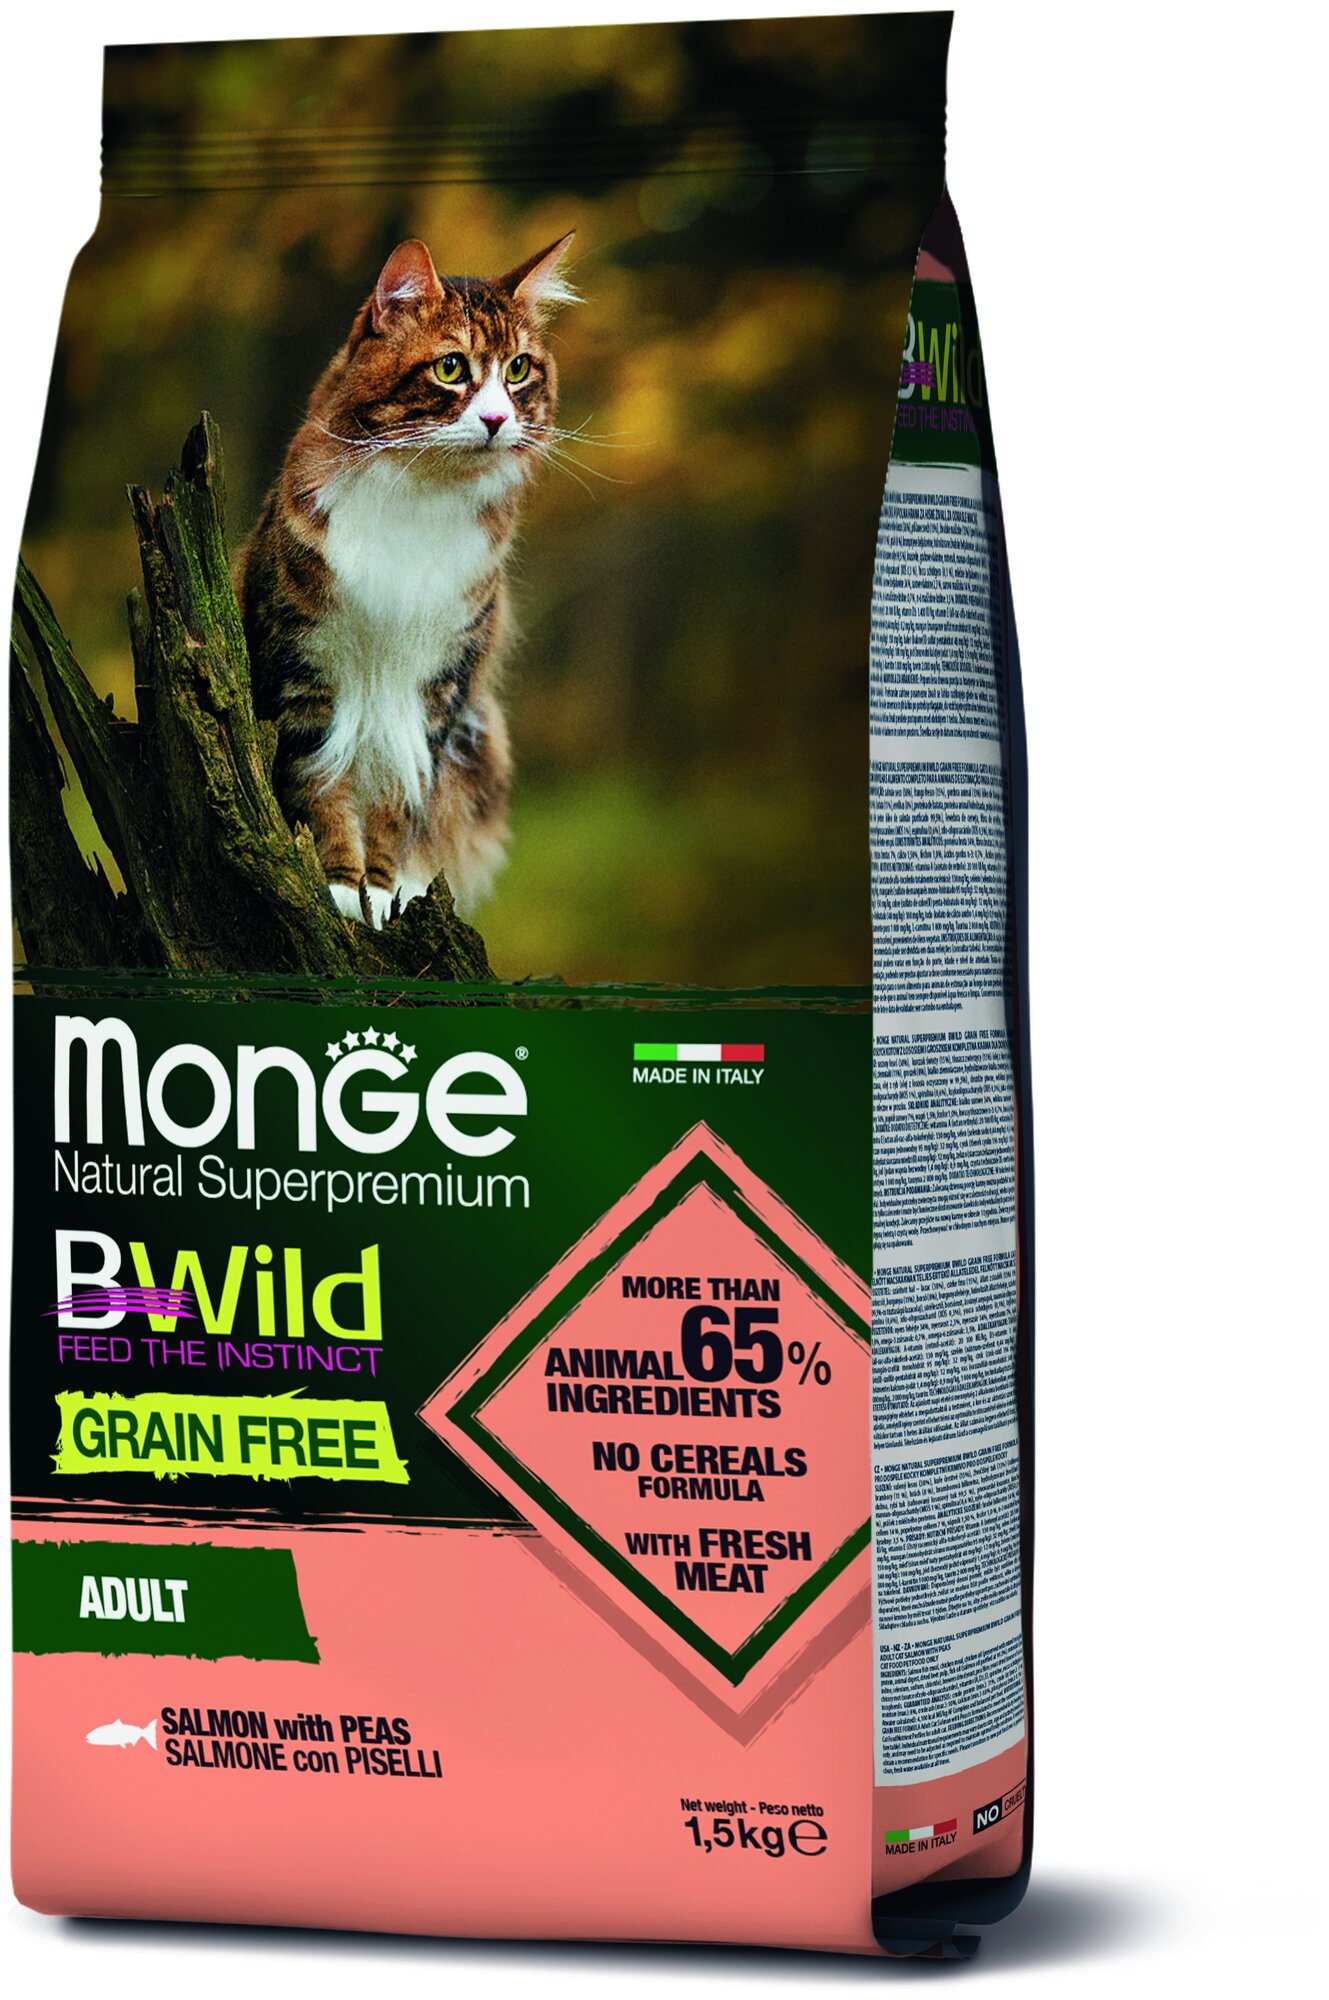 Сухой корм для кошек Monge BWILD Feed the Instinct, беззерновой, с лососем,  с горошком 1.5 кг (кусочки в желе) — купить в интернет-магазине по низкой  цене на Яндекс Маркете